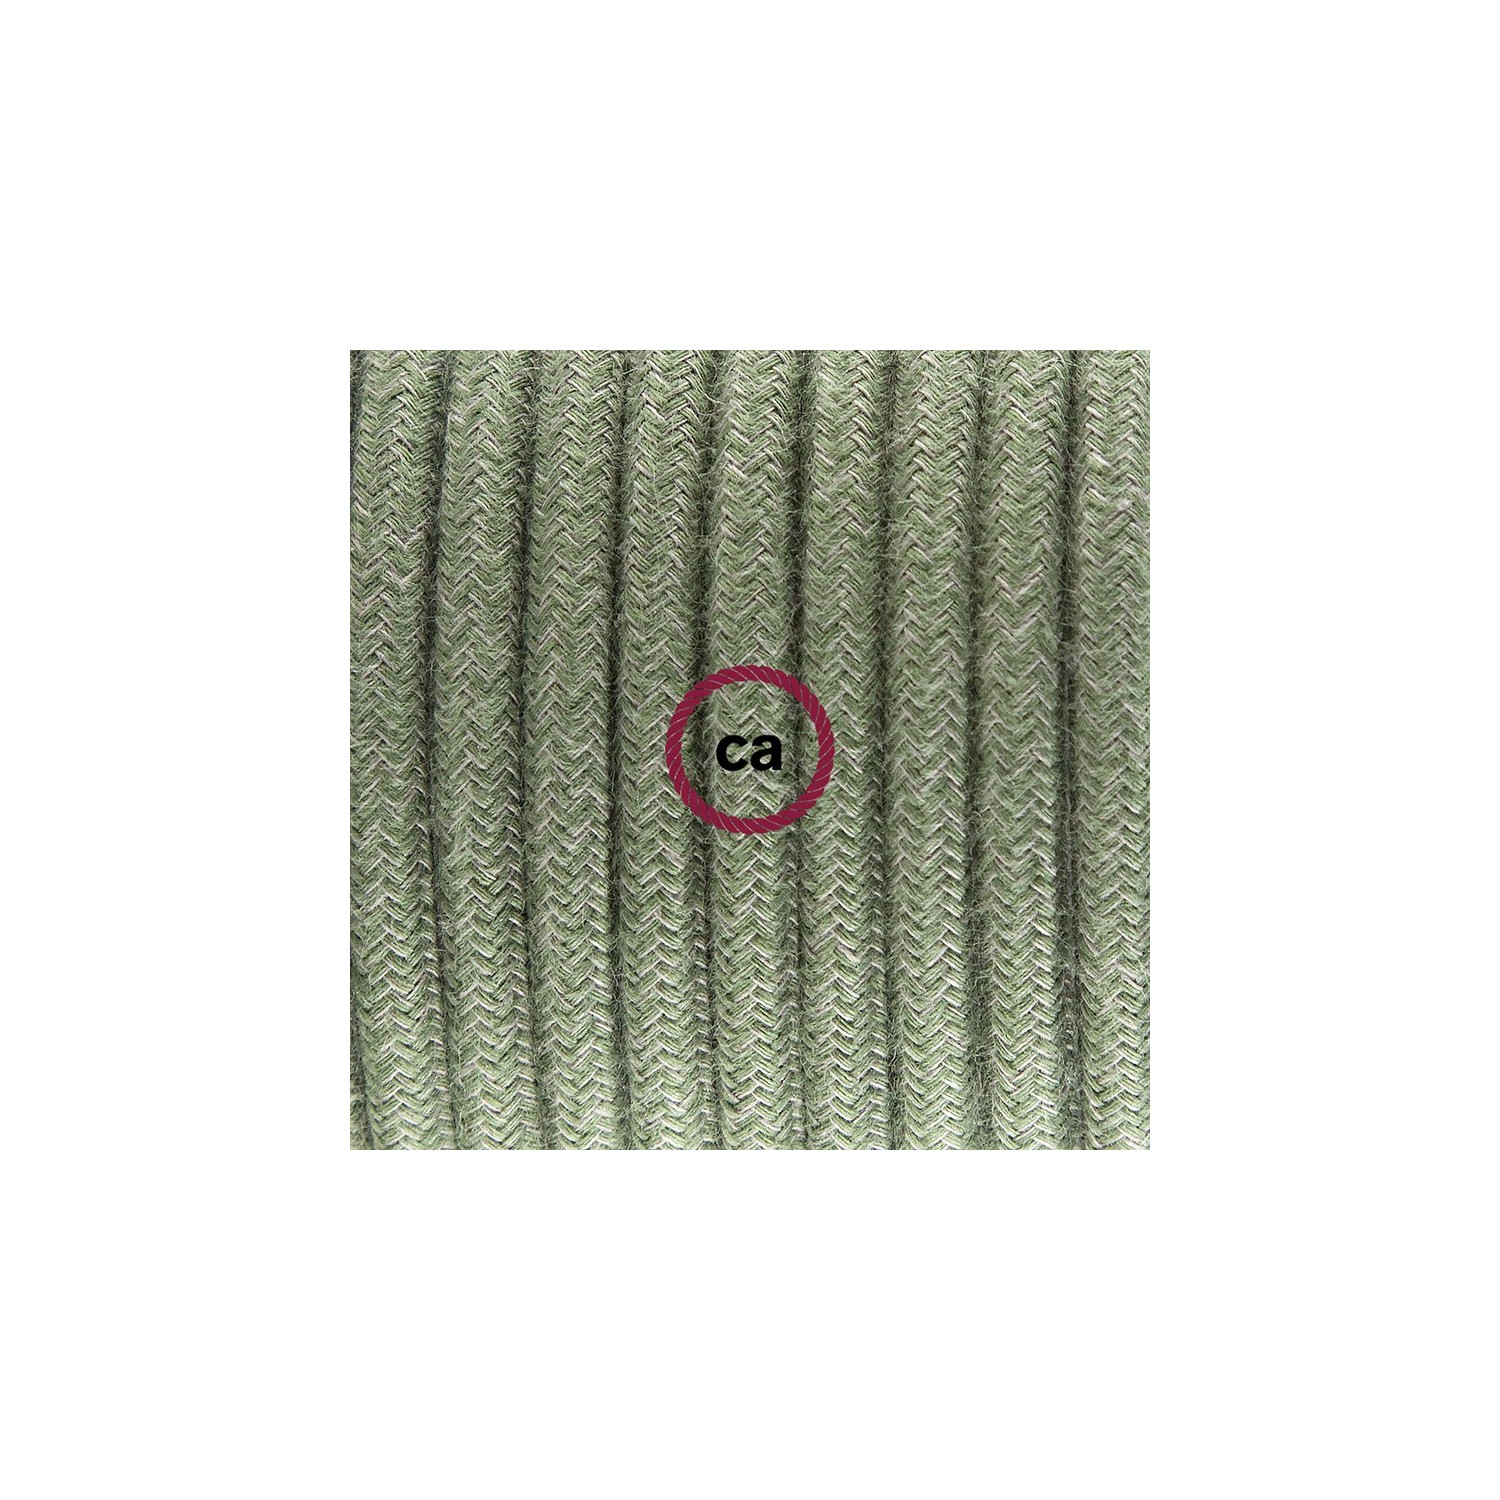 Ronde flexibele textielkabel van katoen met schakelaar en stekker. RC63 - groengrijs 1,80 m.